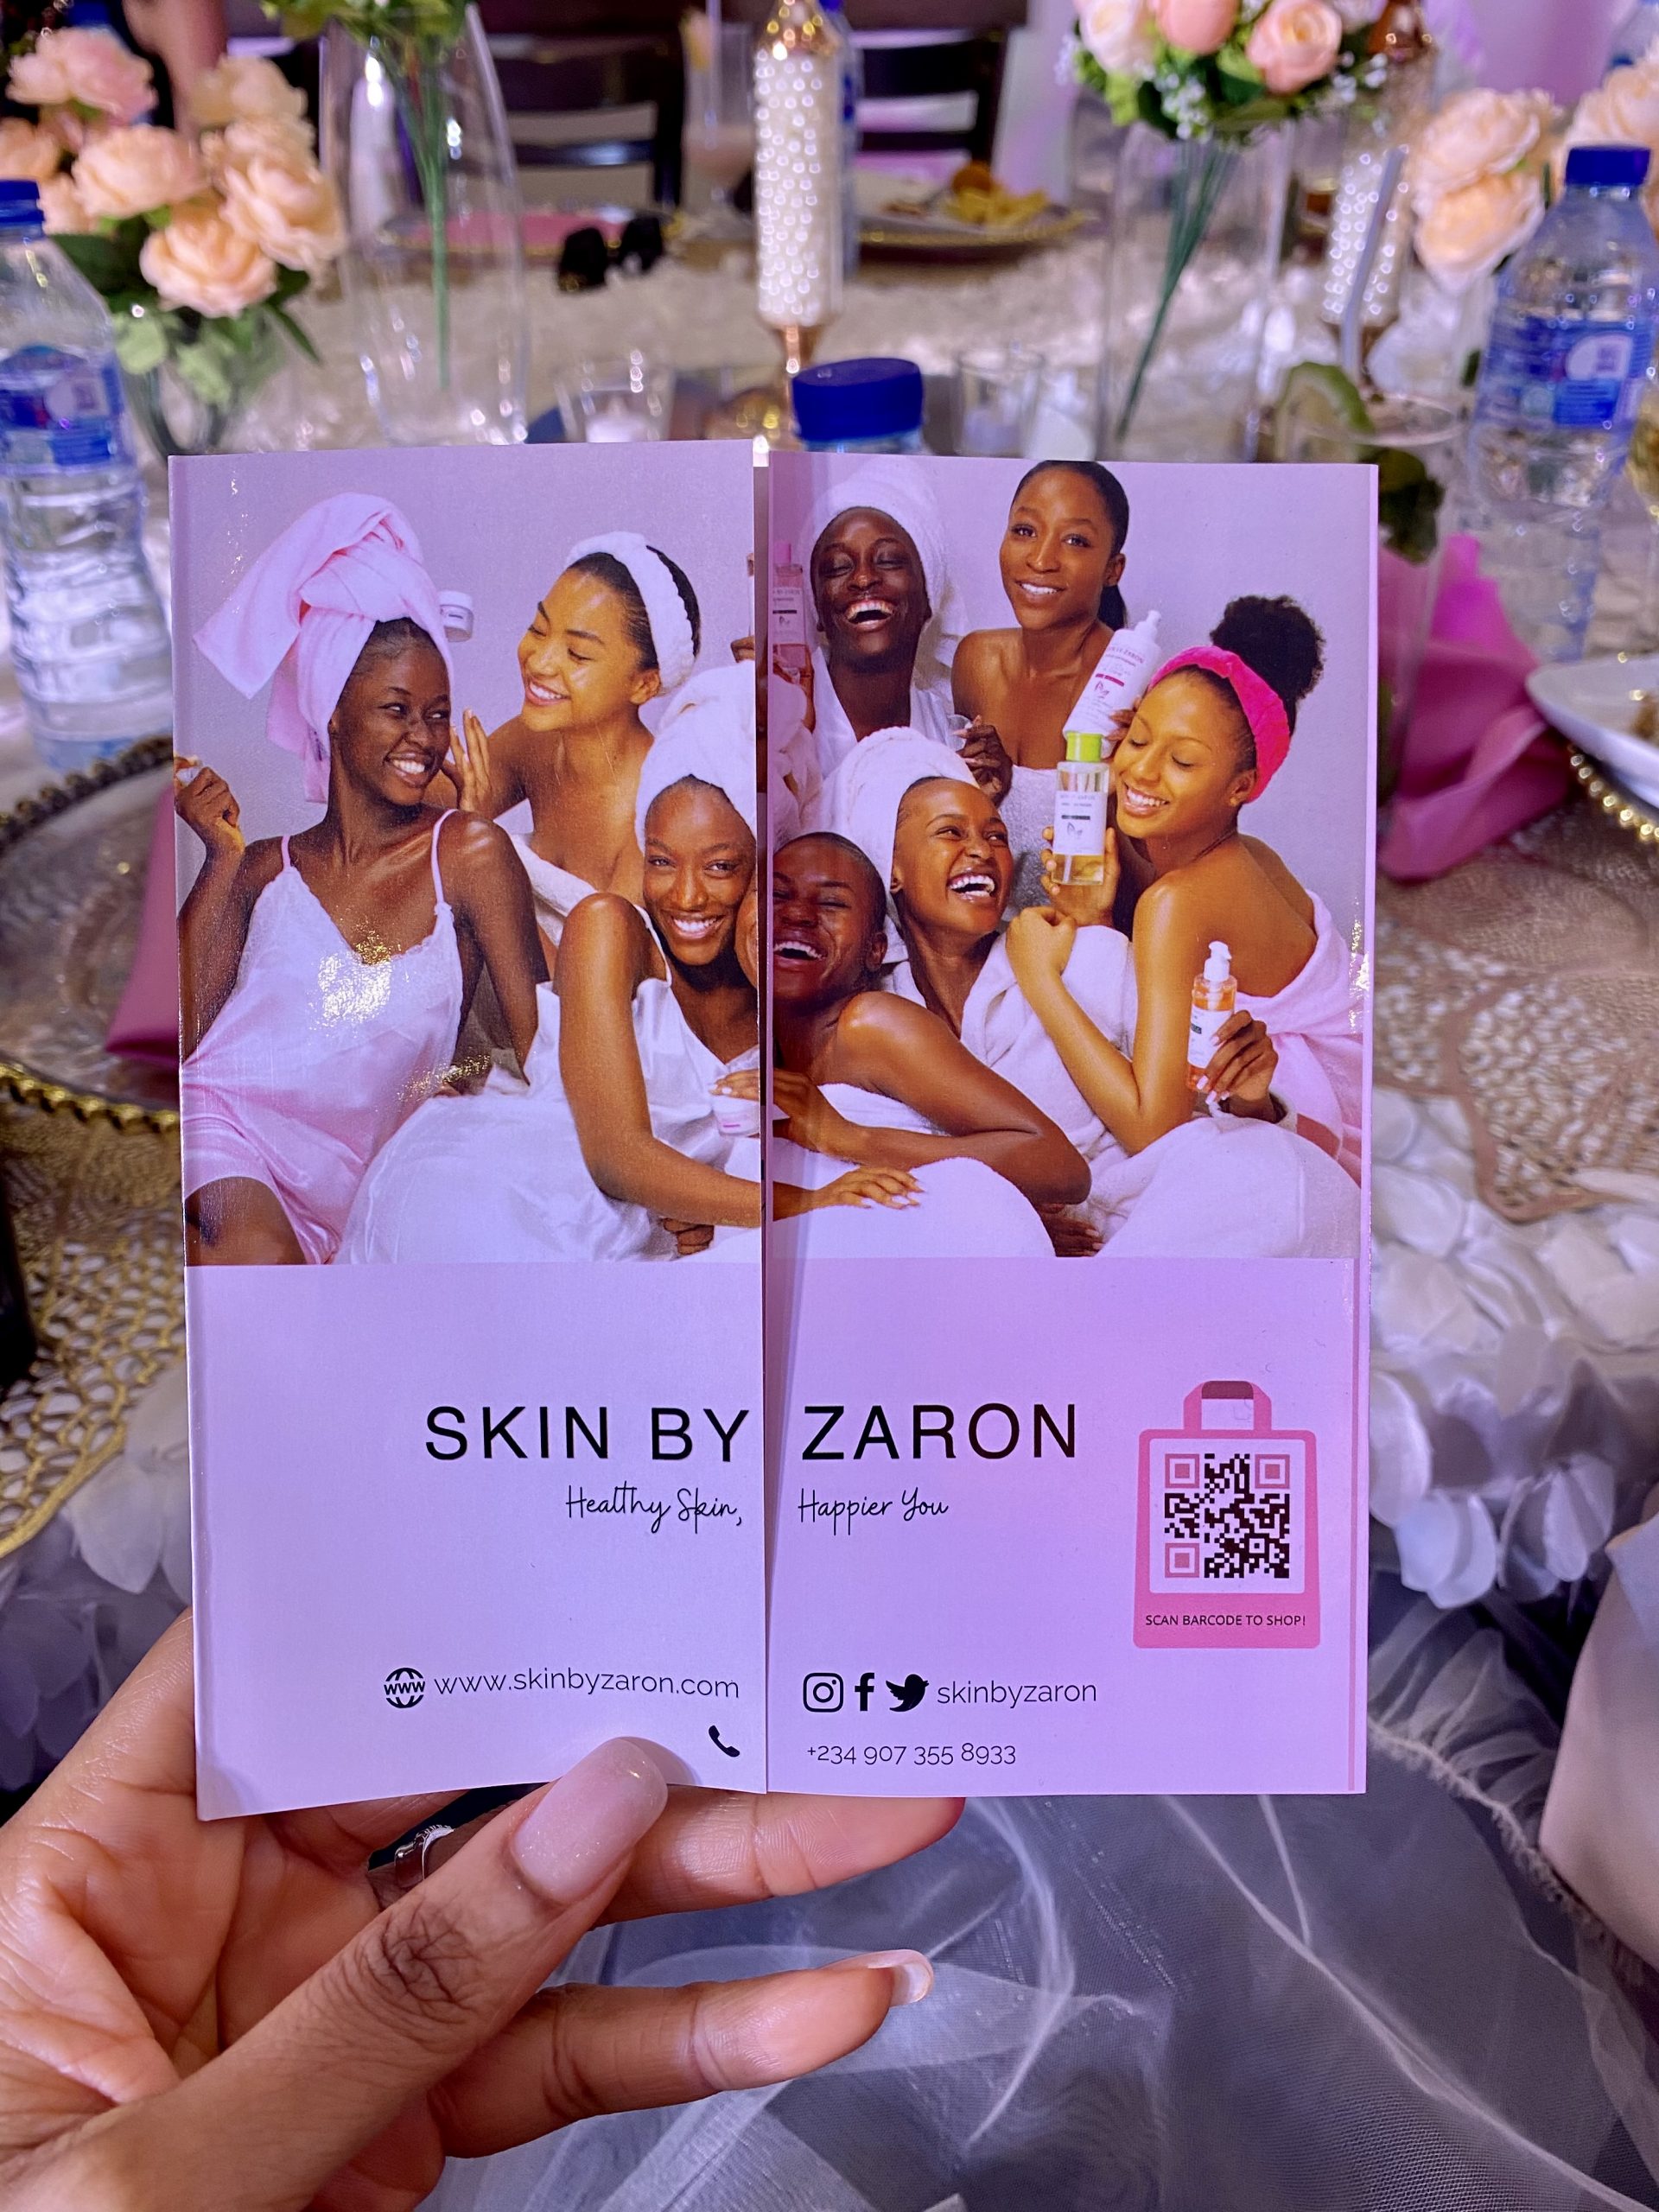 Skin by Zaron Abuja Launch Event